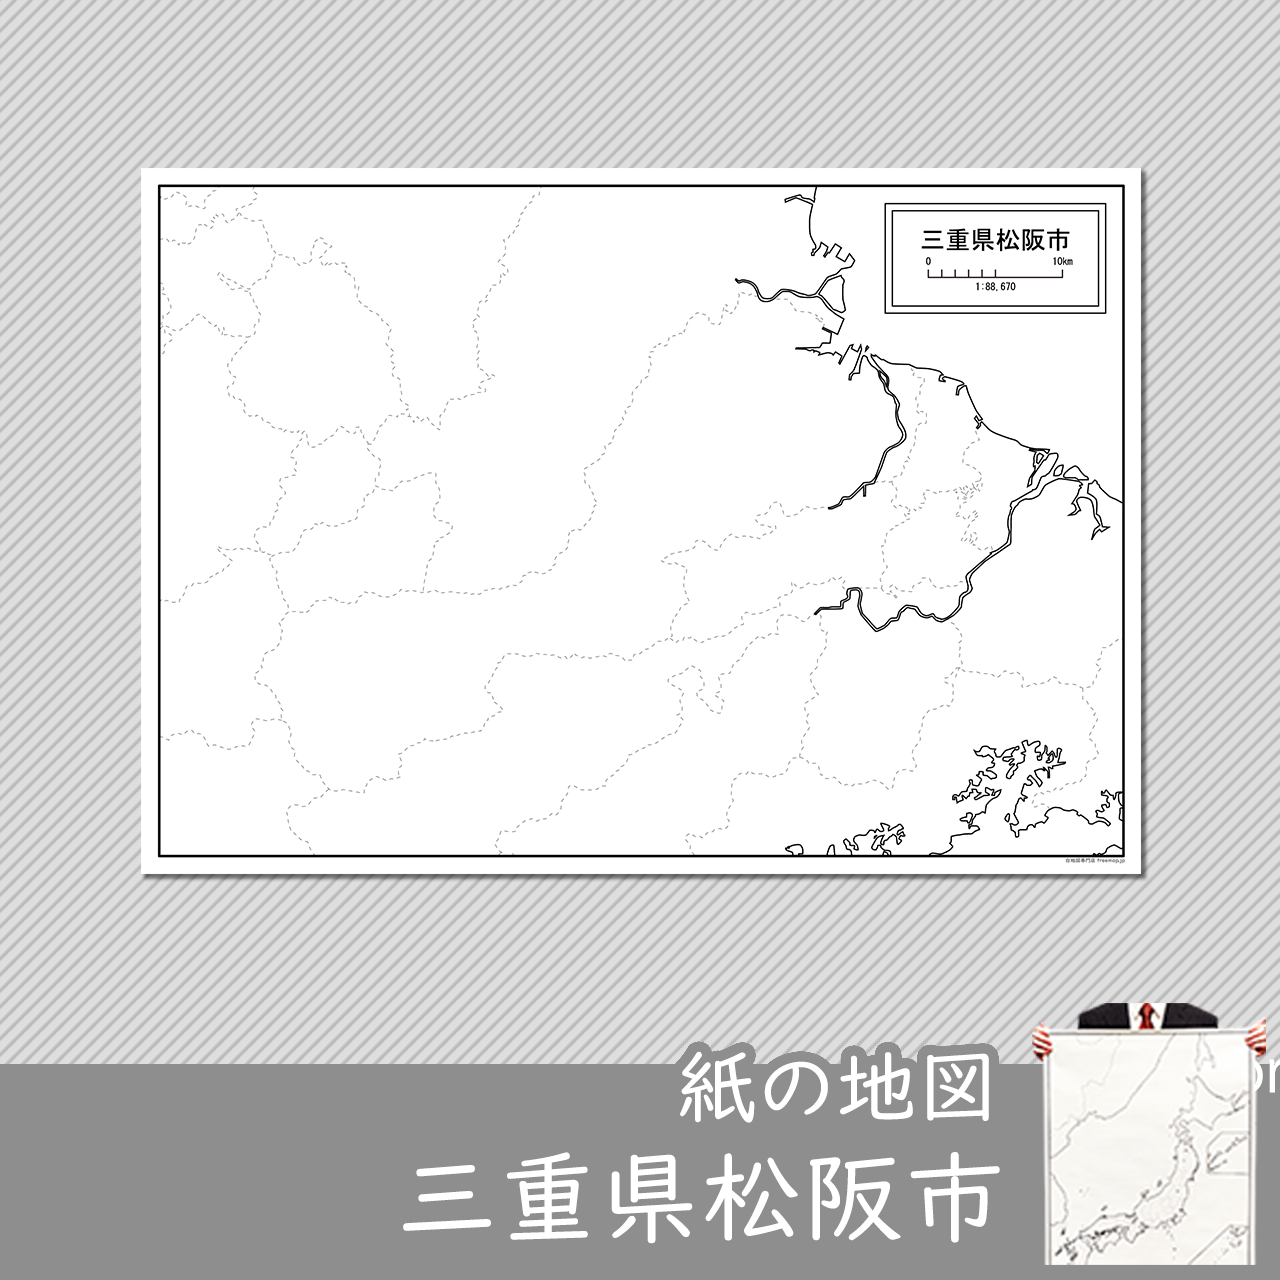 松阪市の紙の白地図のサムネイル